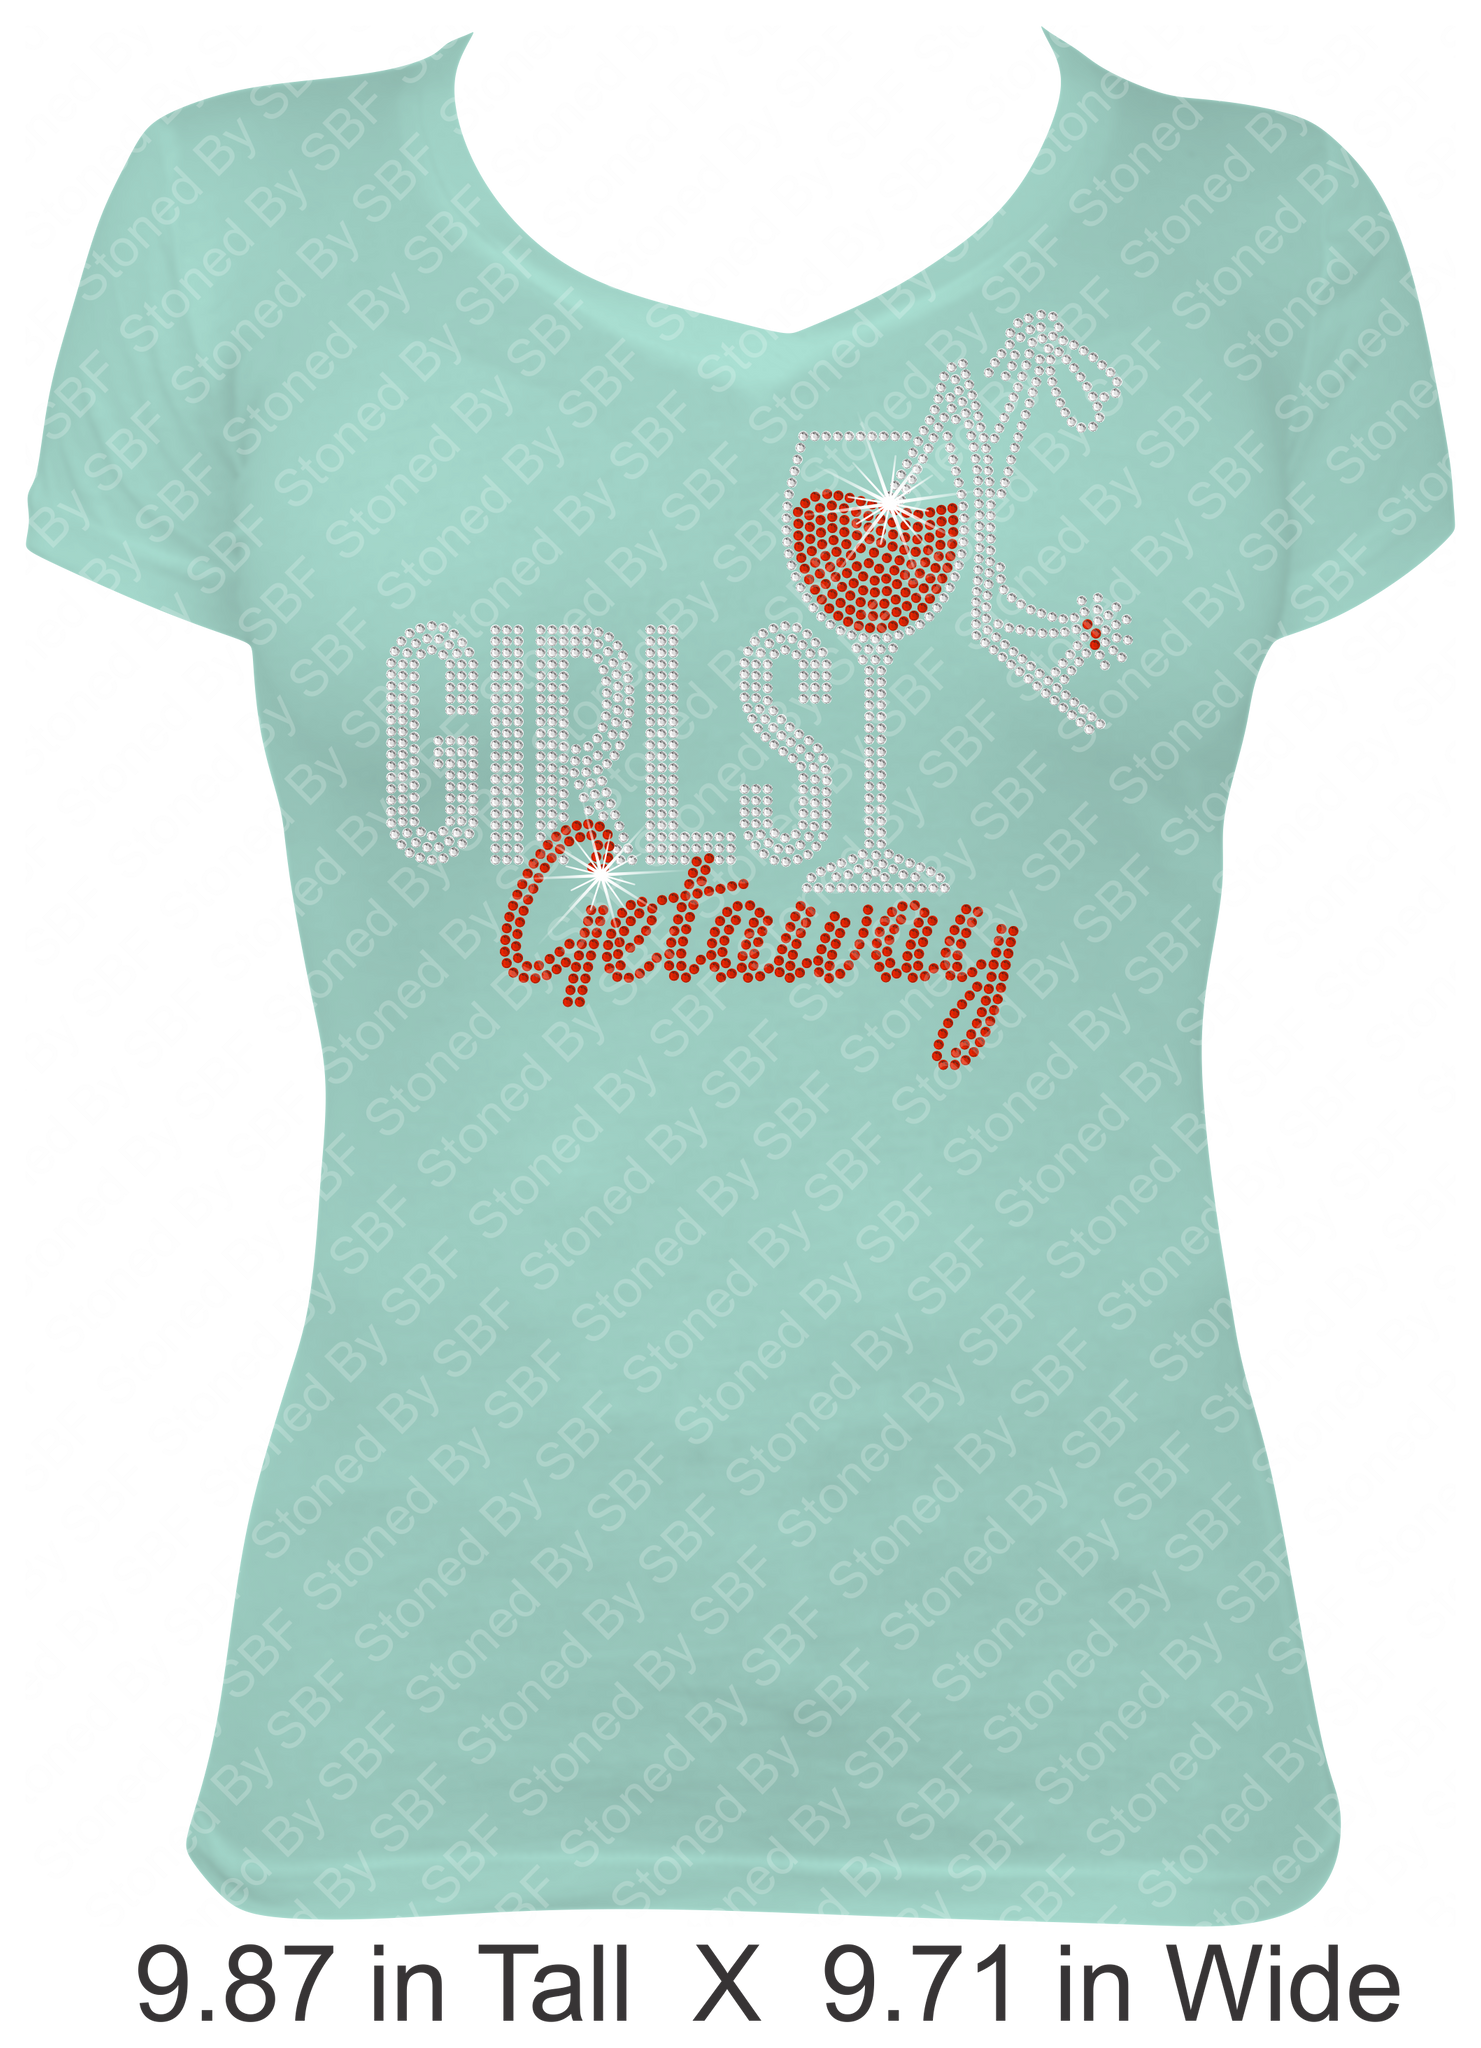 Girls Getaway - Wine Glass & Stiletto